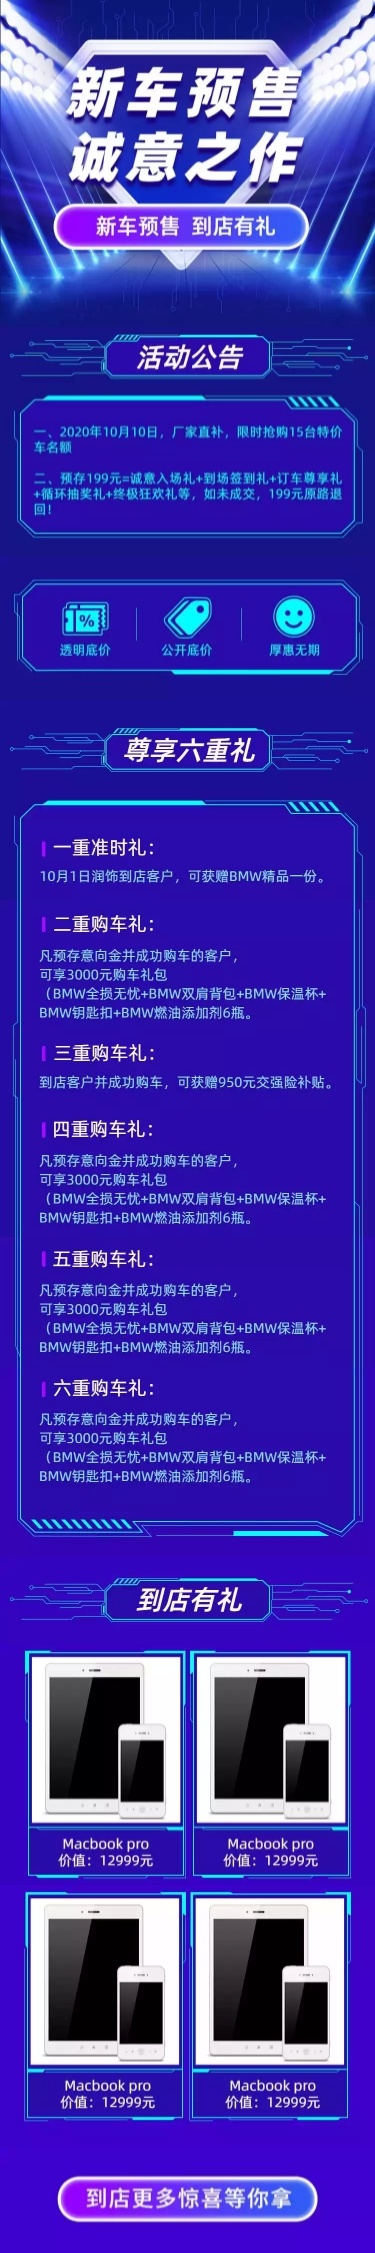 购车科技4s店促销汽车活动详情页